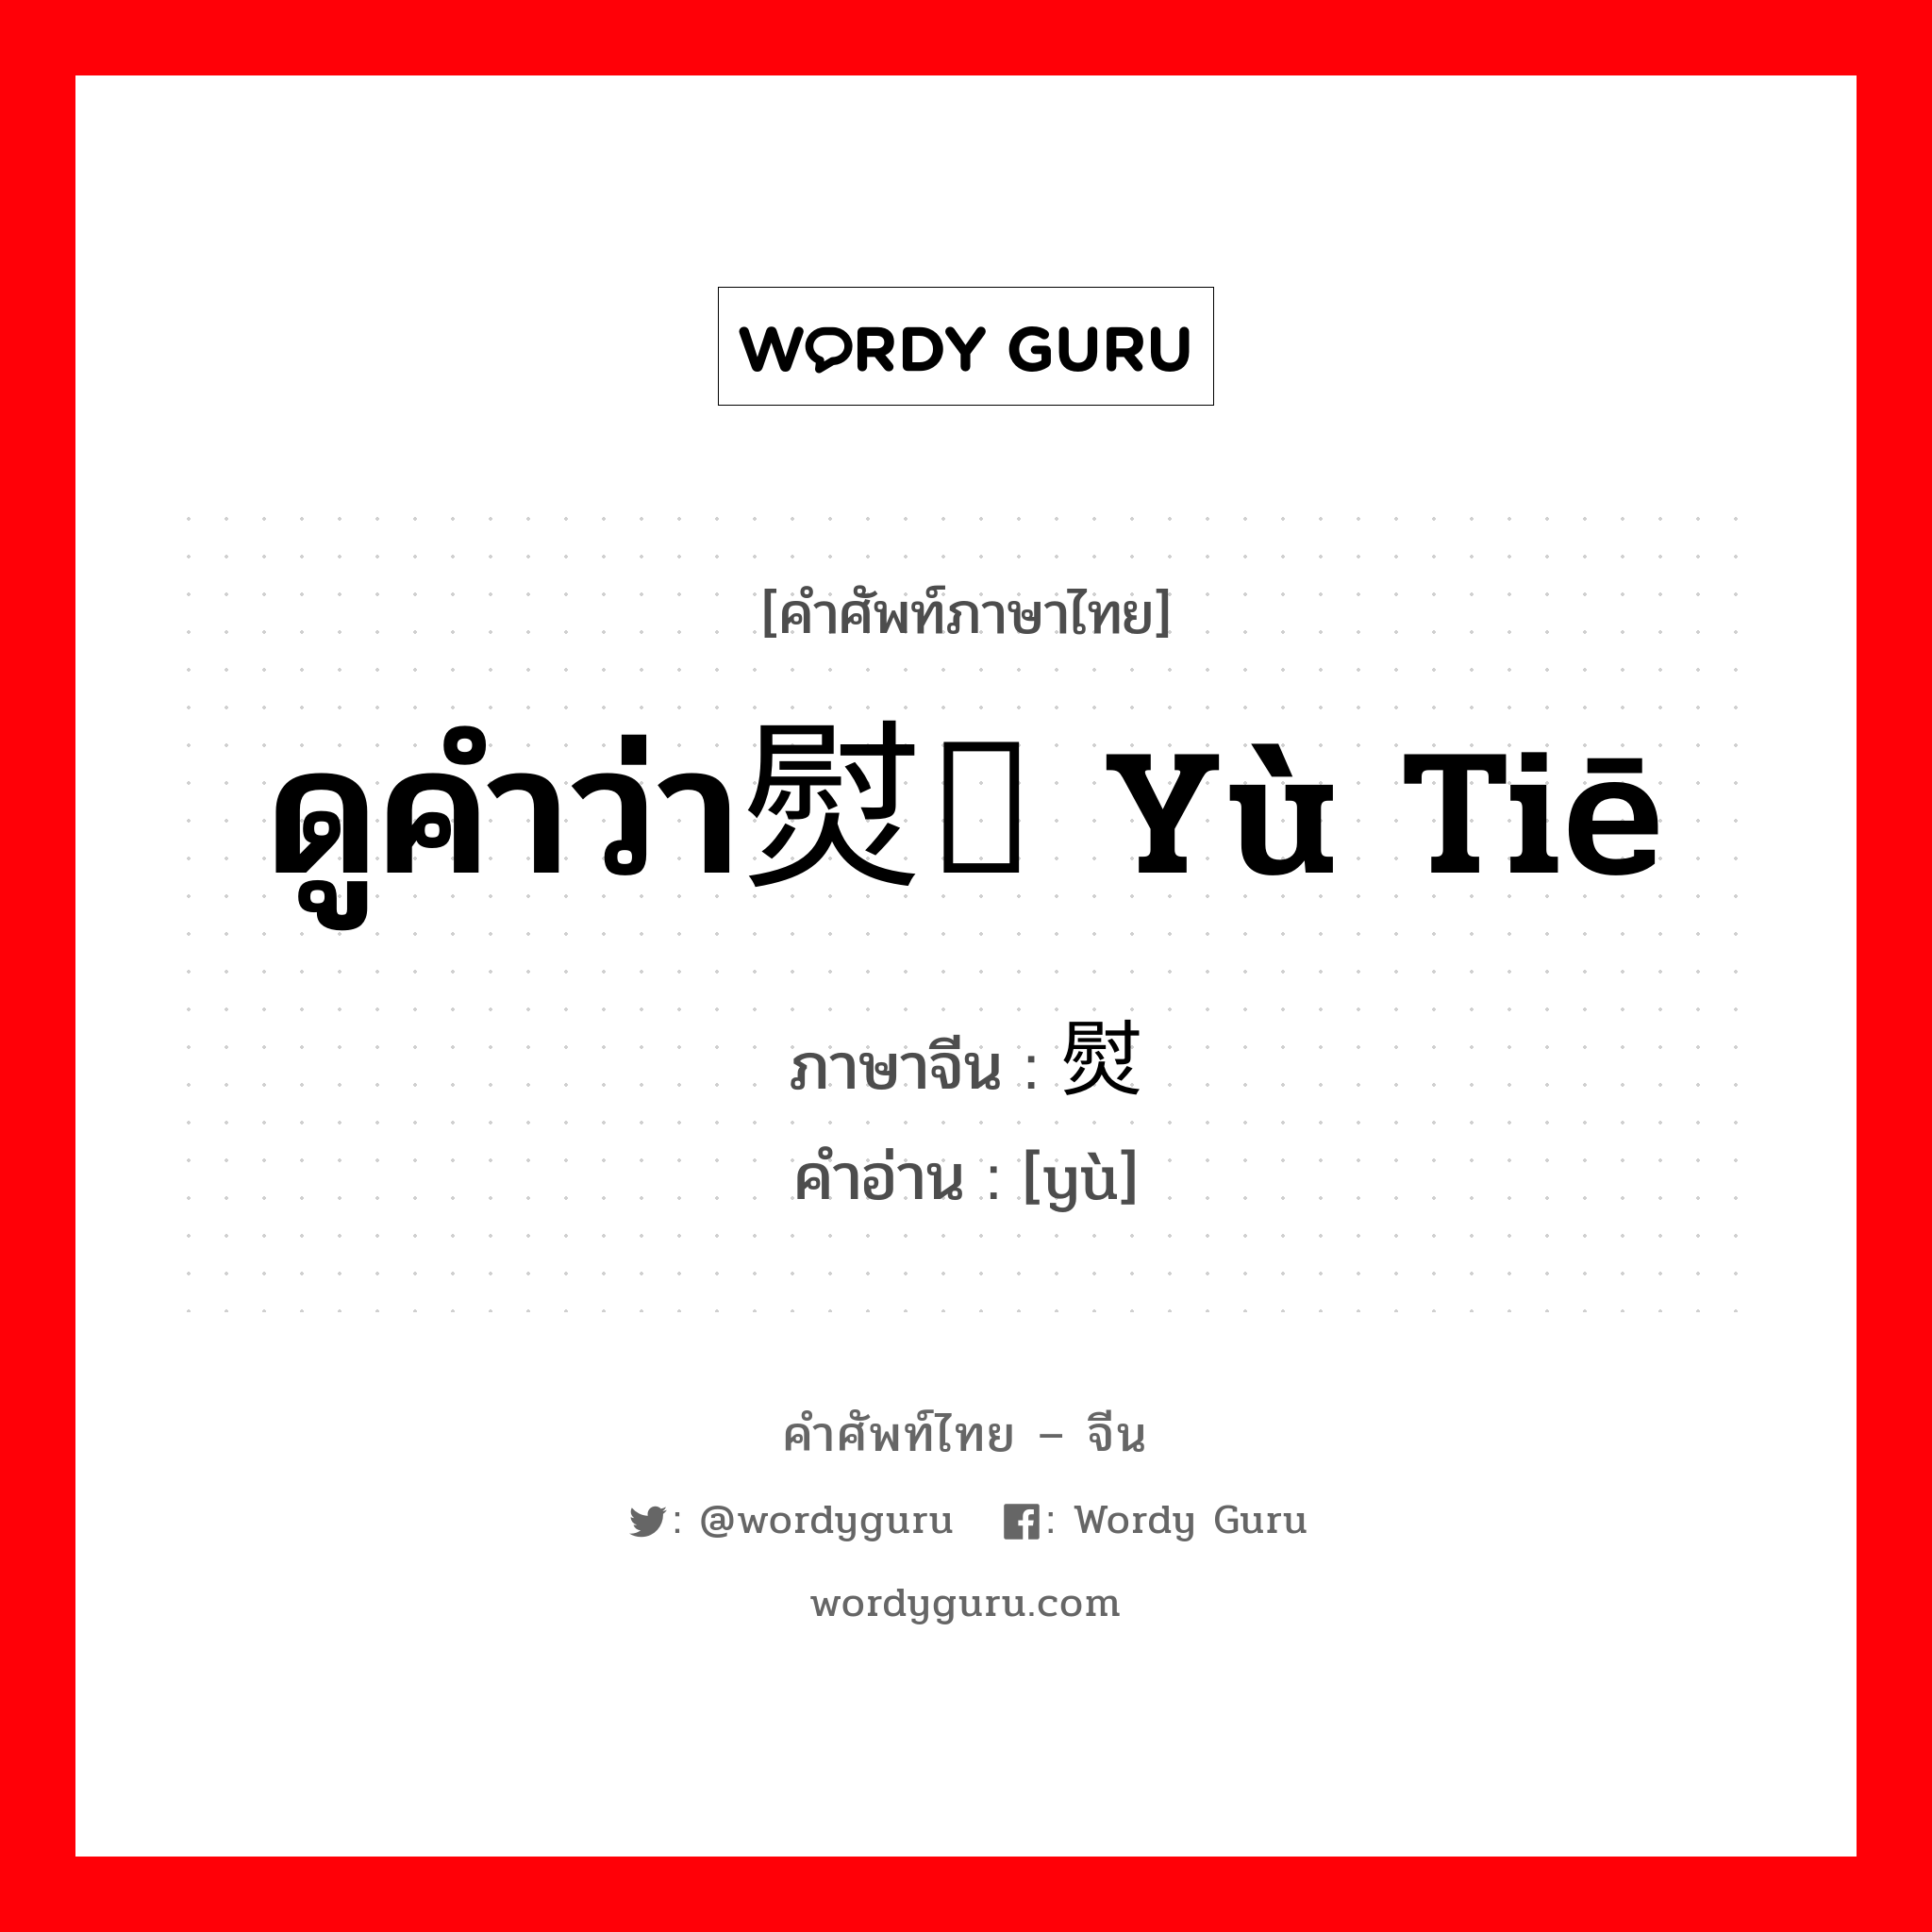 ดูคำว่า熨贴 yù tiē ภาษาจีนคืออะไร, คำศัพท์ภาษาไทย - จีน ดูคำว่า熨贴 yù tiē ภาษาจีน 熨 คำอ่าน [yù]